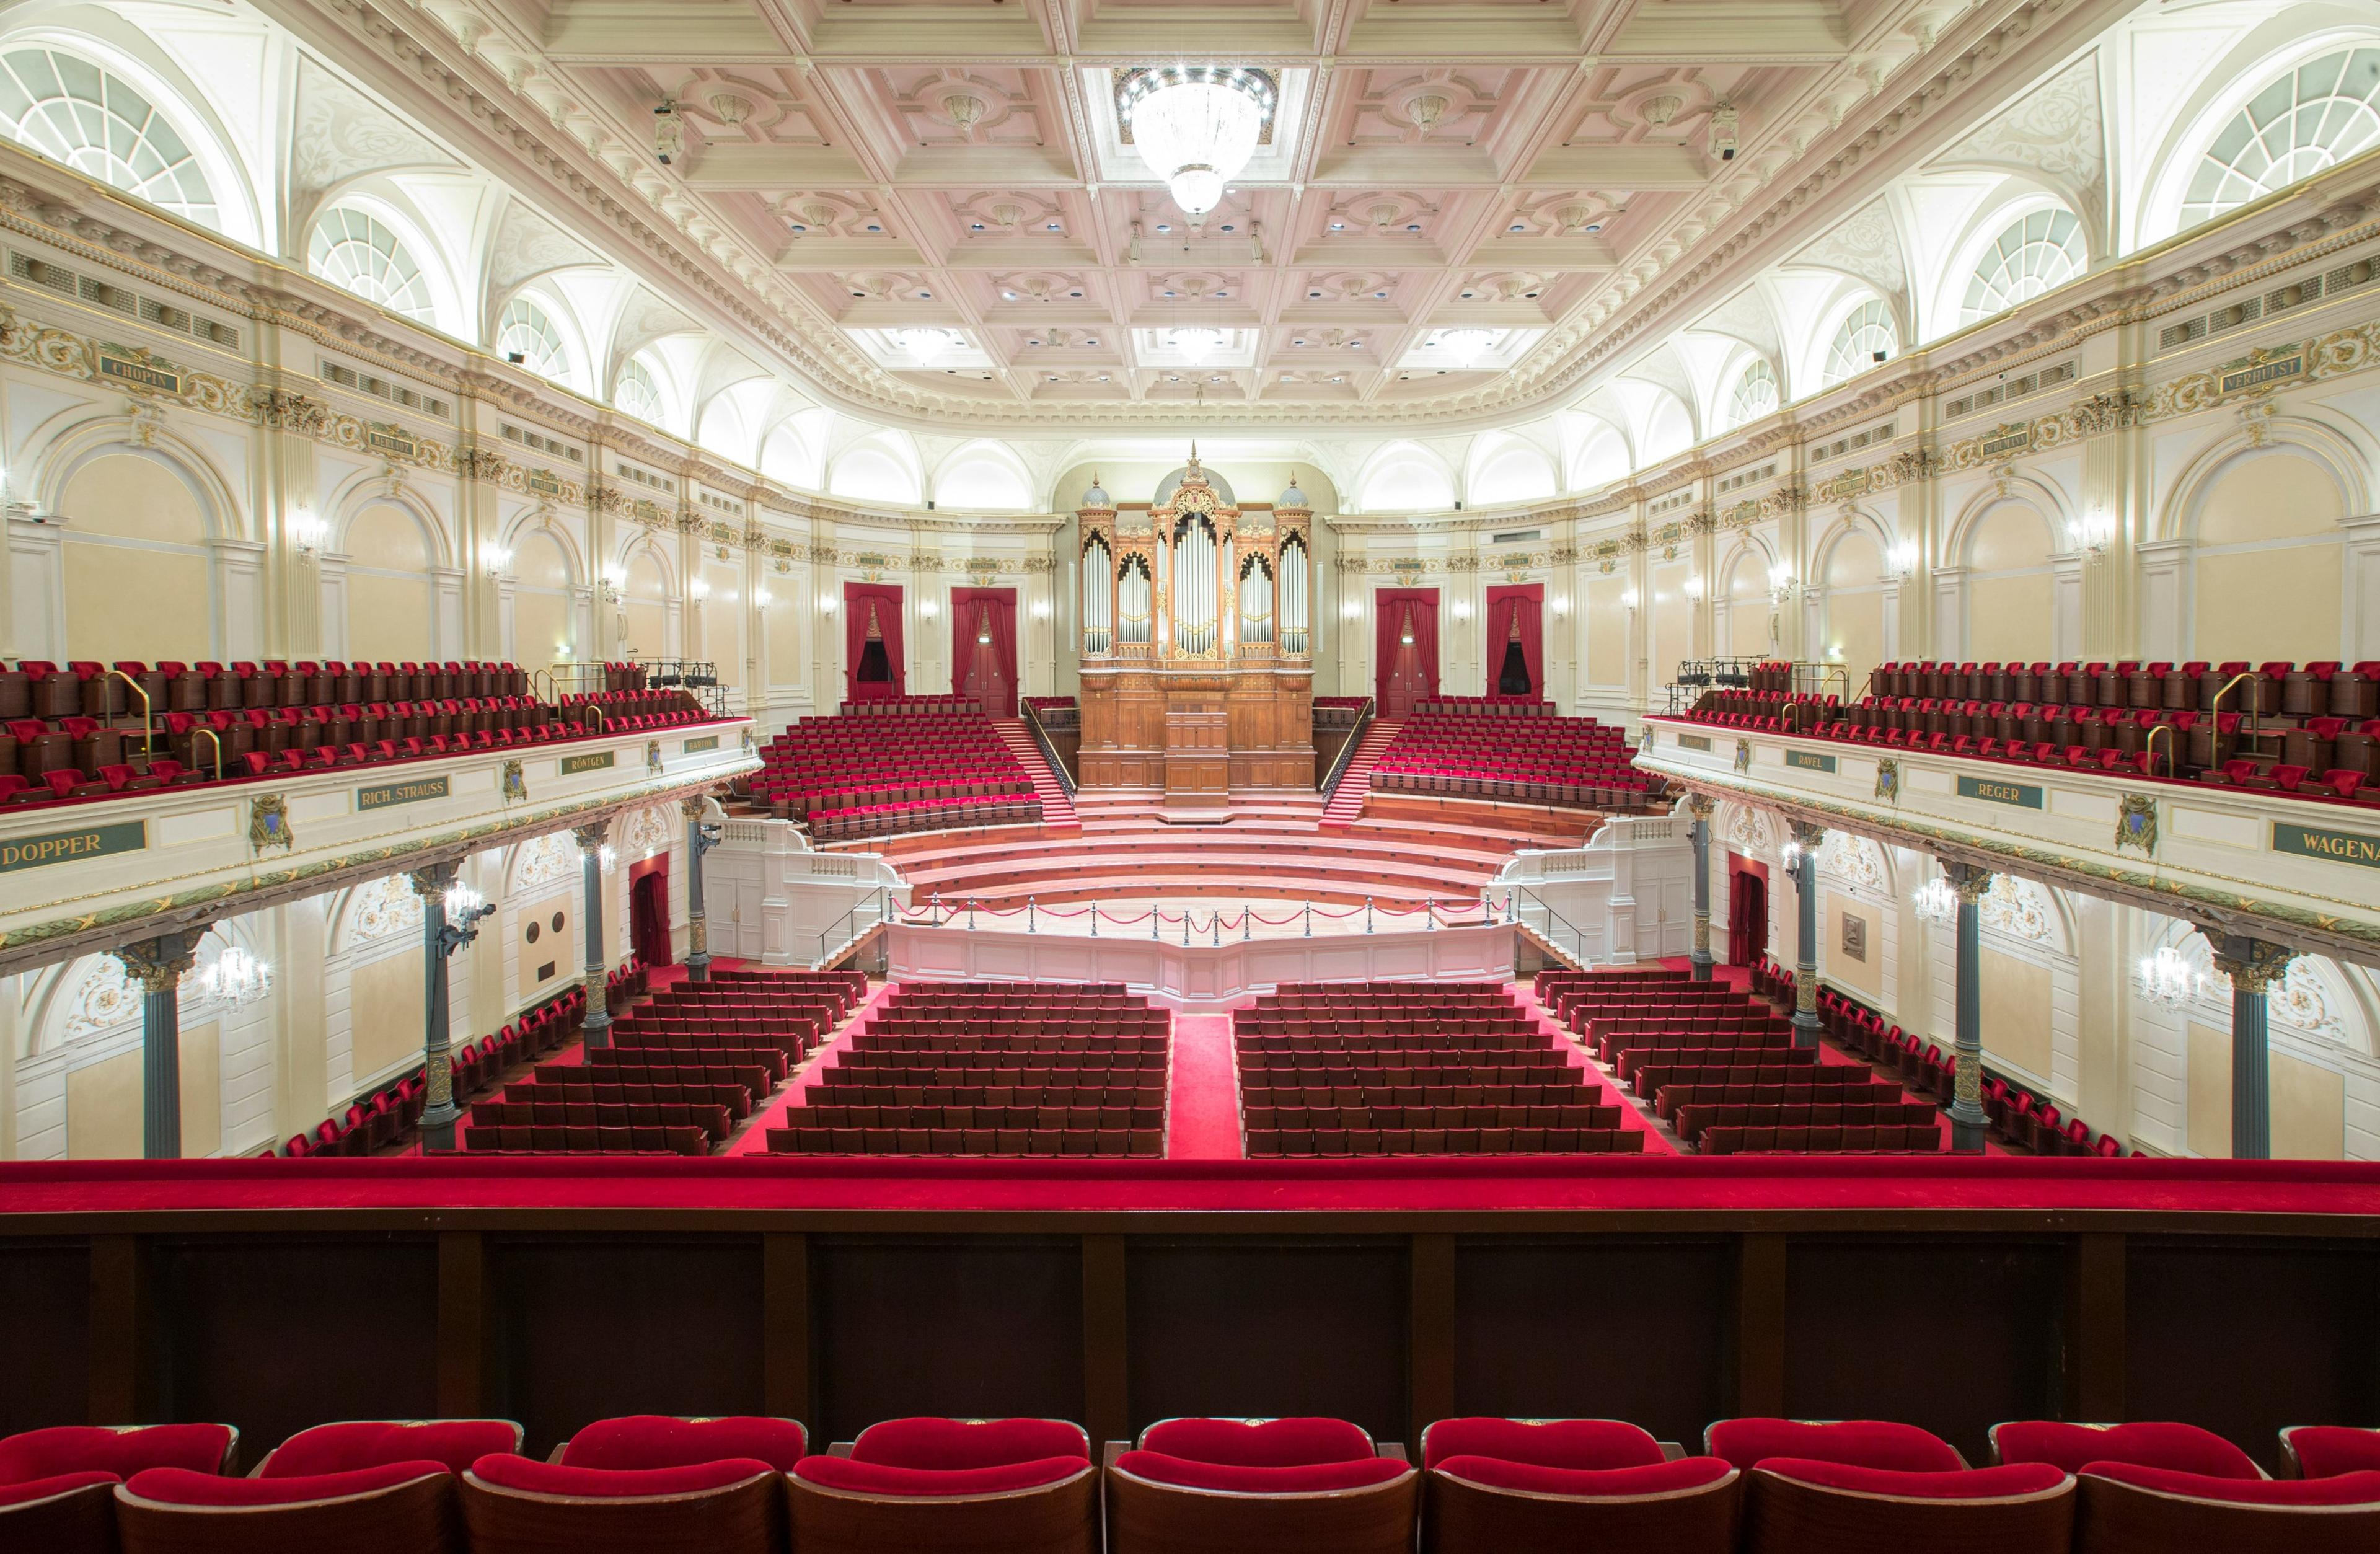 The Concertgebouw (Royal Concertgebouw)